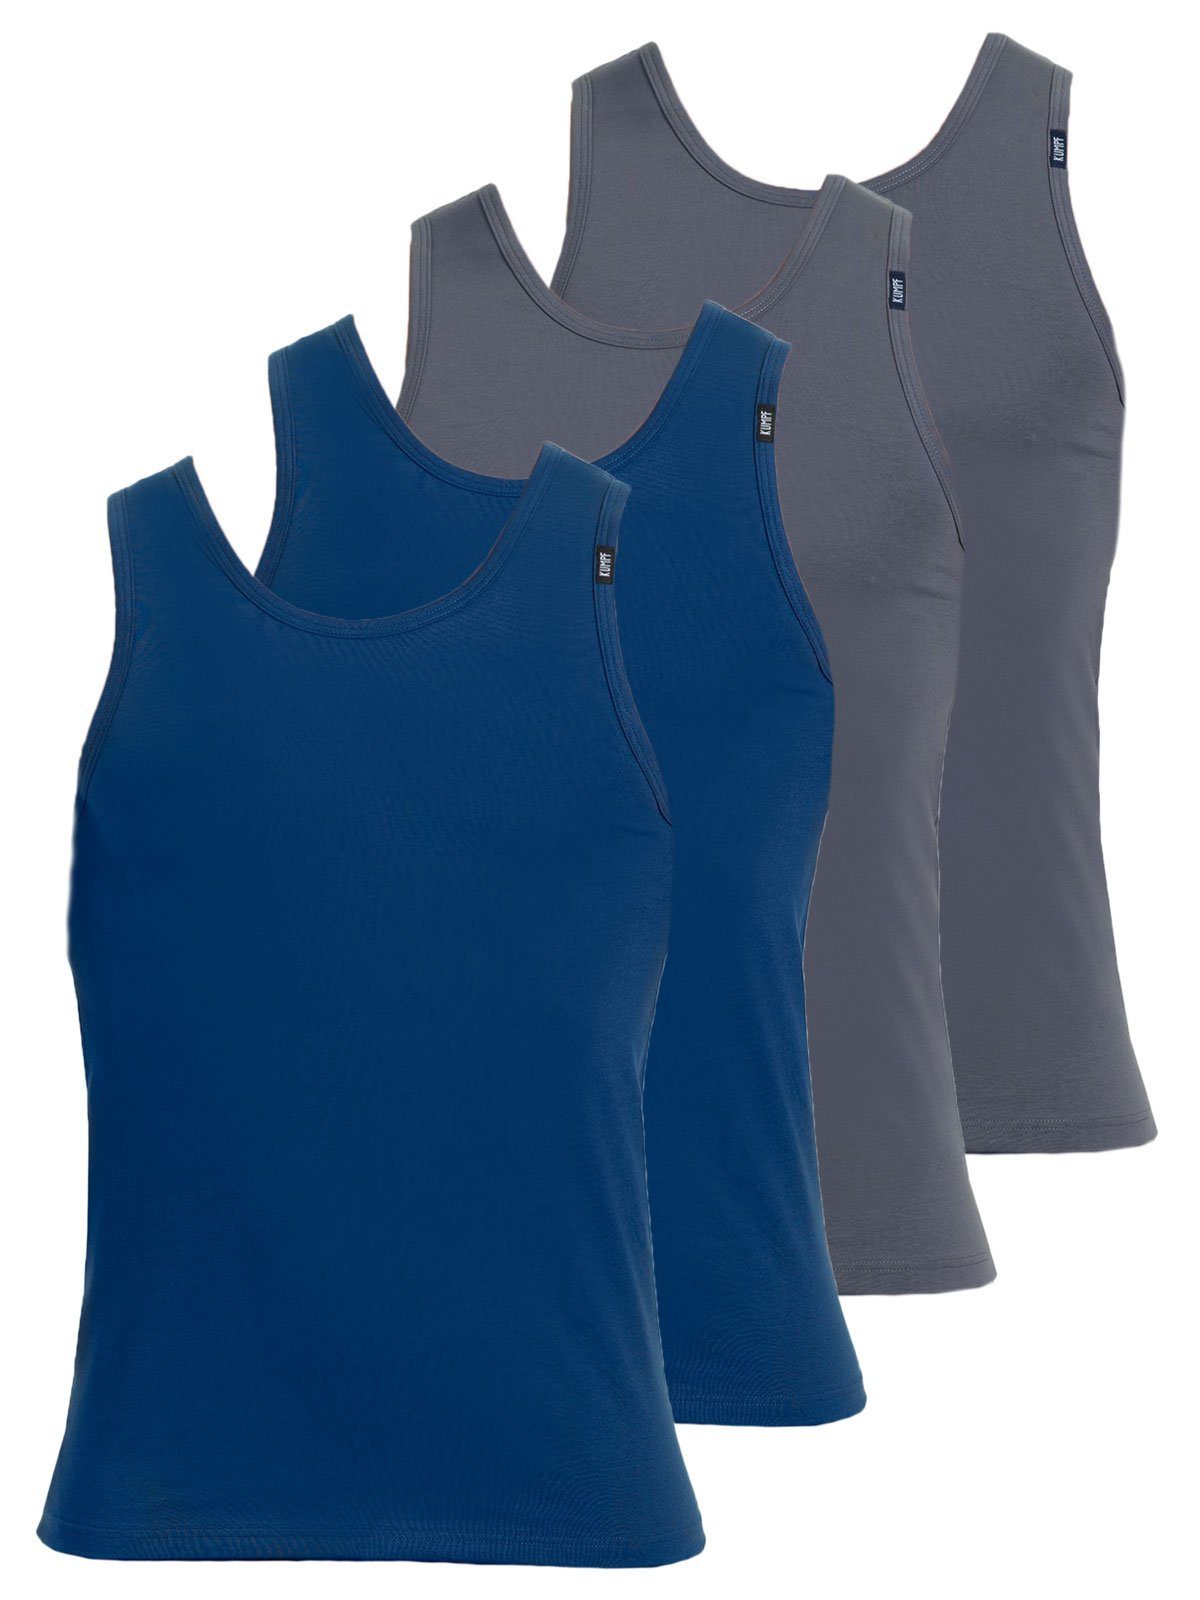 KUMPF Achselhemd 4er Sparpack Herren Unterhemd Bio Cotton (Spar-Set, 4-St) hohe Markenqualität darkblue mittelgrau